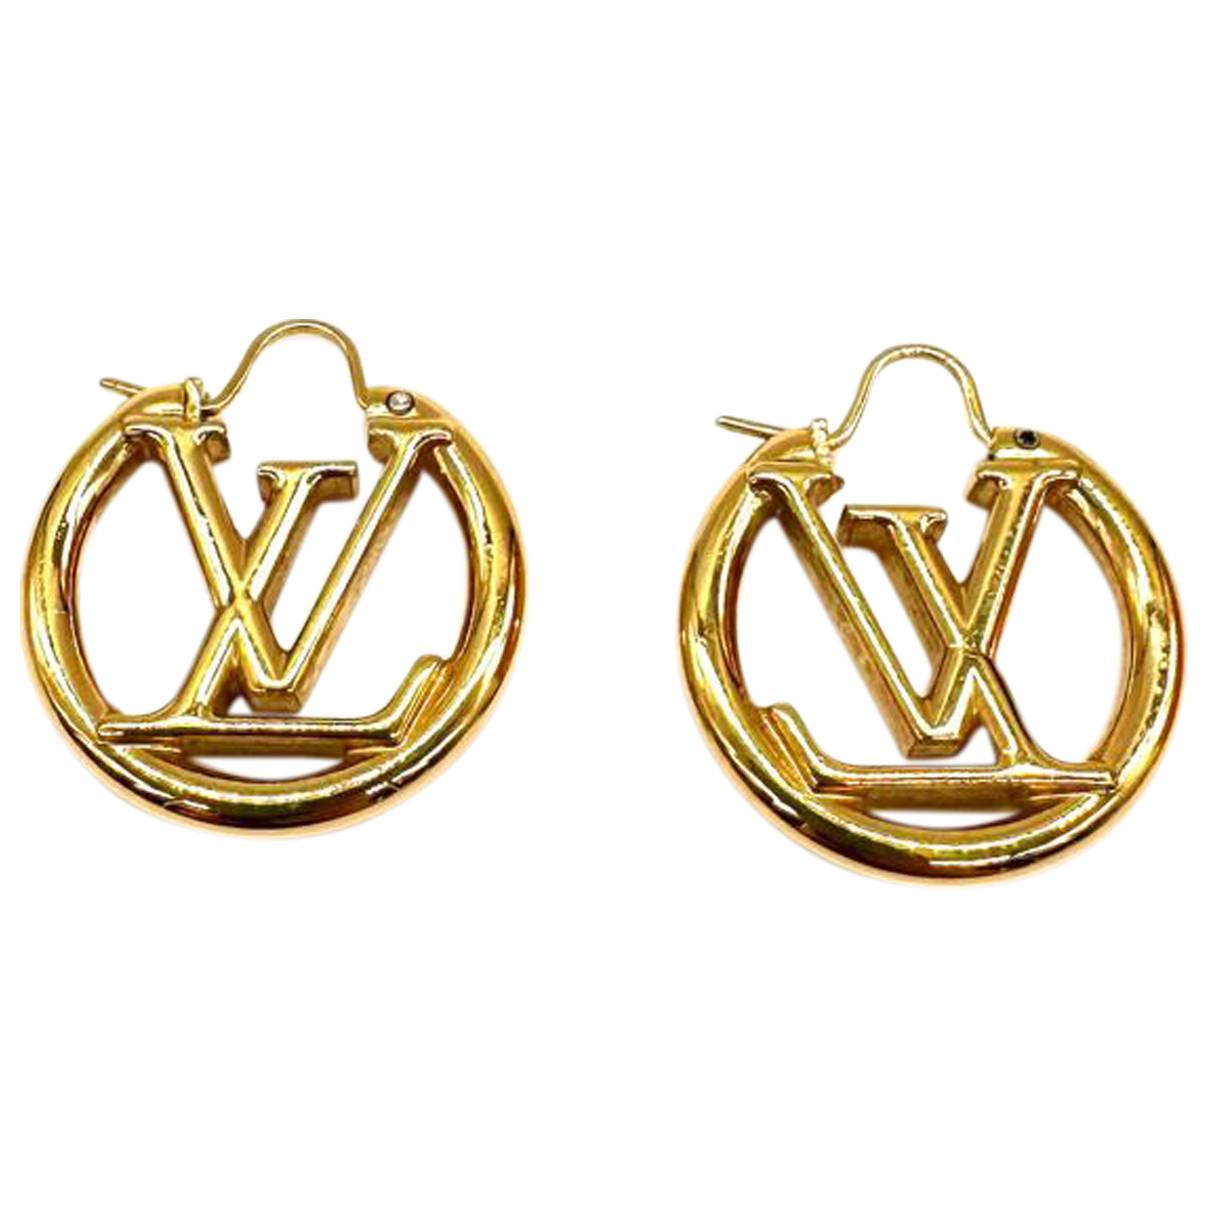 Louise earrings Louis Vuitton Silver in Metal - 36169546